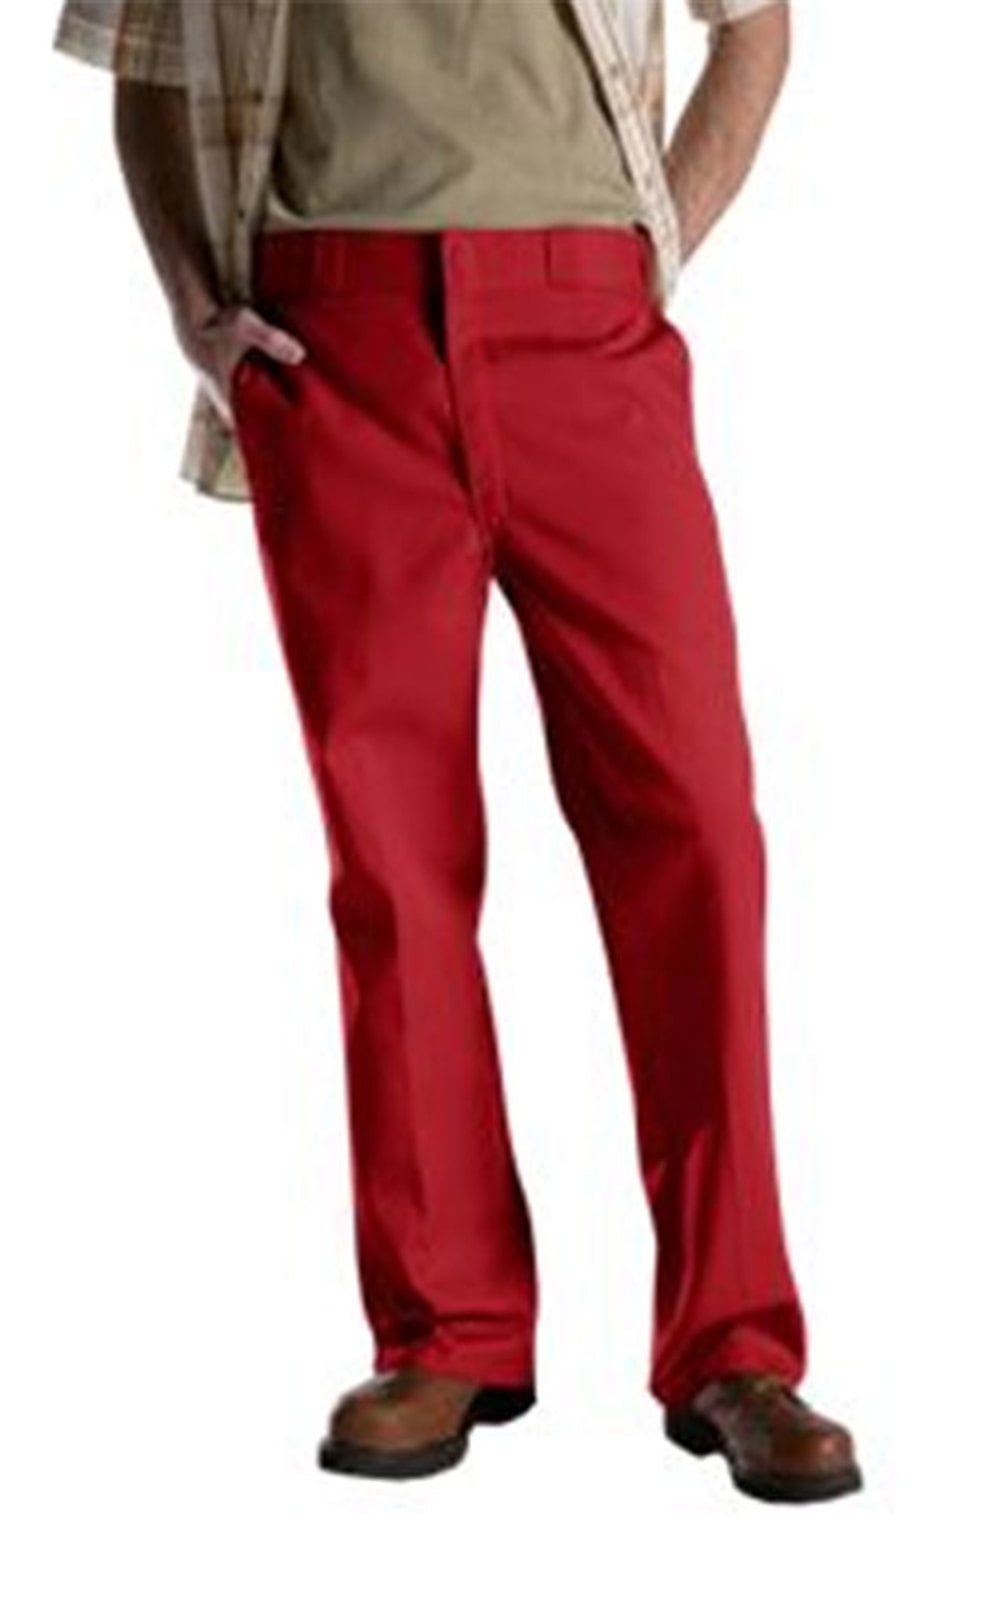 Men's Durable Original Work Pants RED 28x30 - Walmart.com